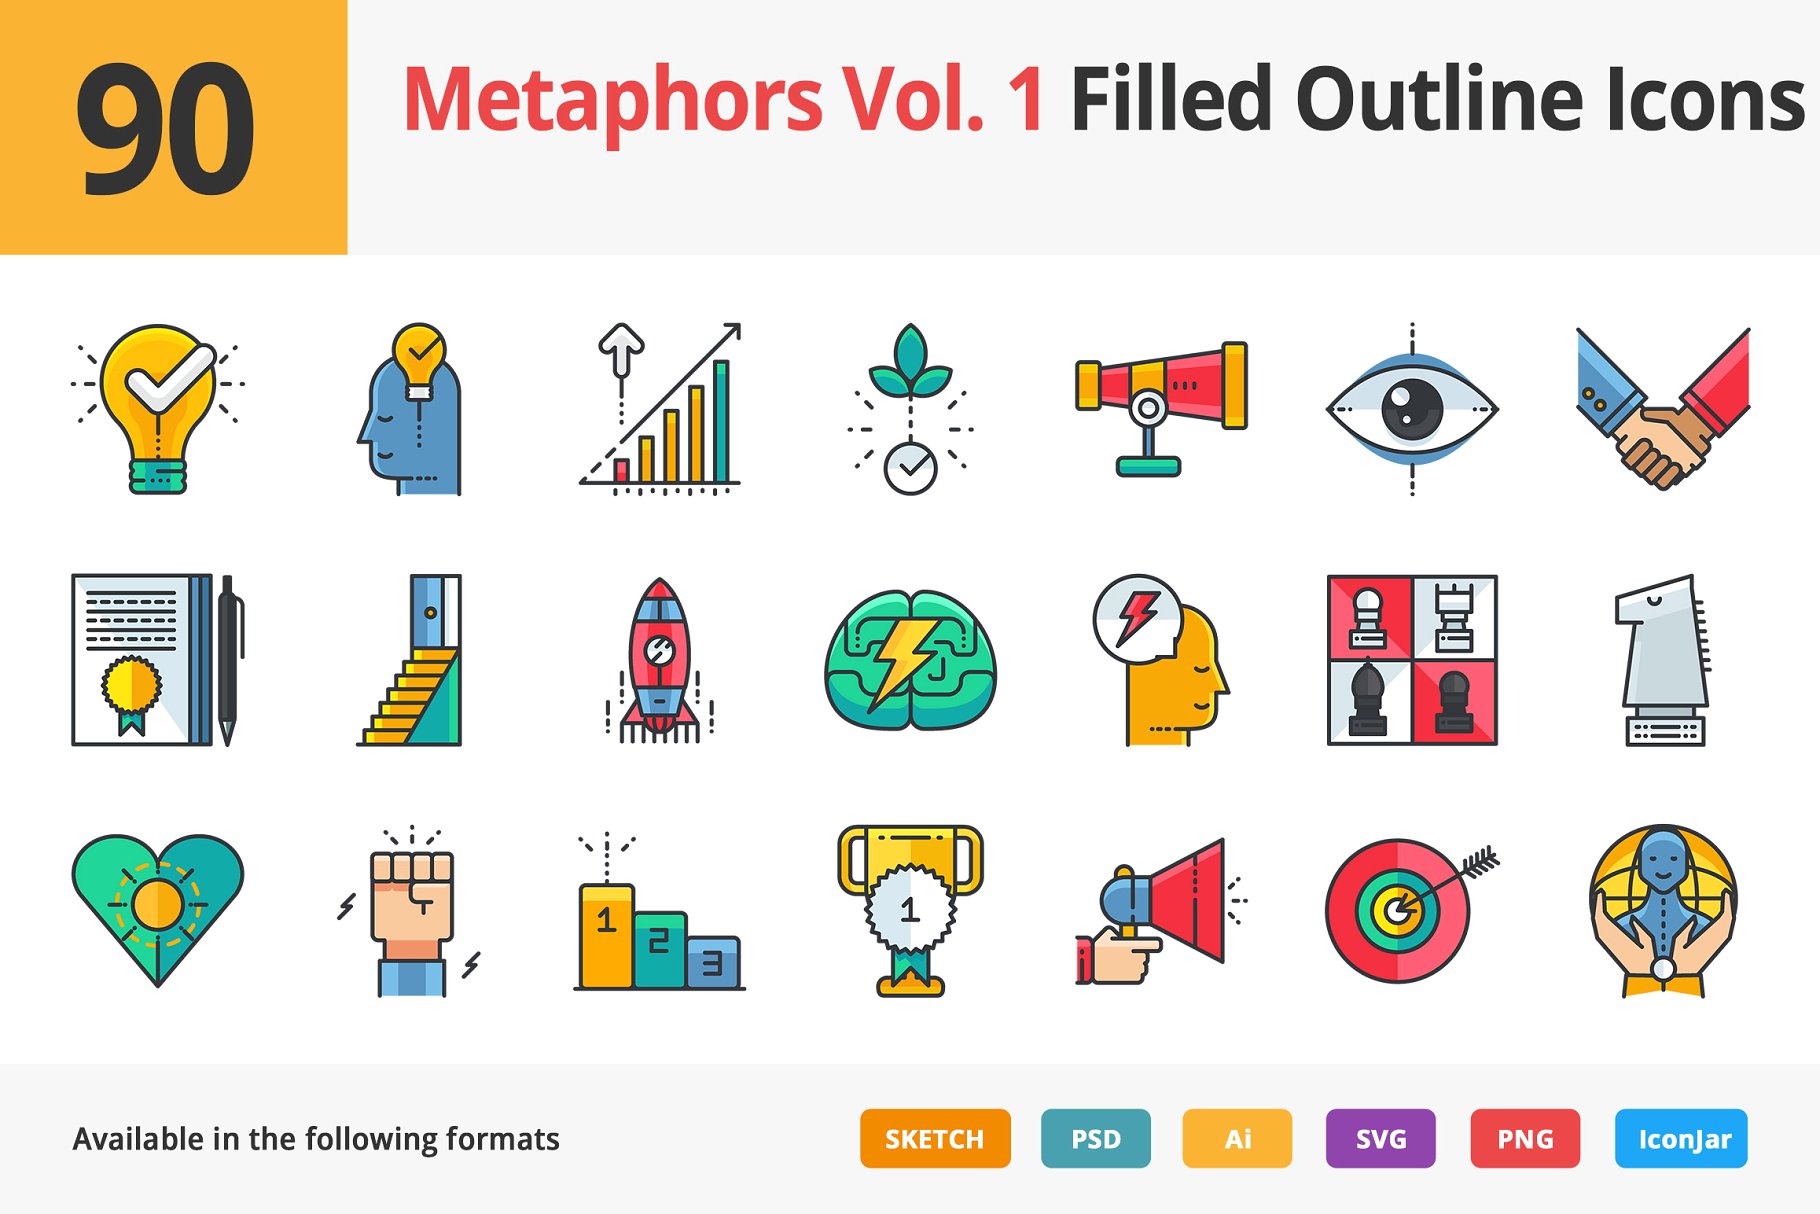 90个哲学主题隐喻填充小图标素材 90 Metaphors Vol. 1 Filled Icons插图